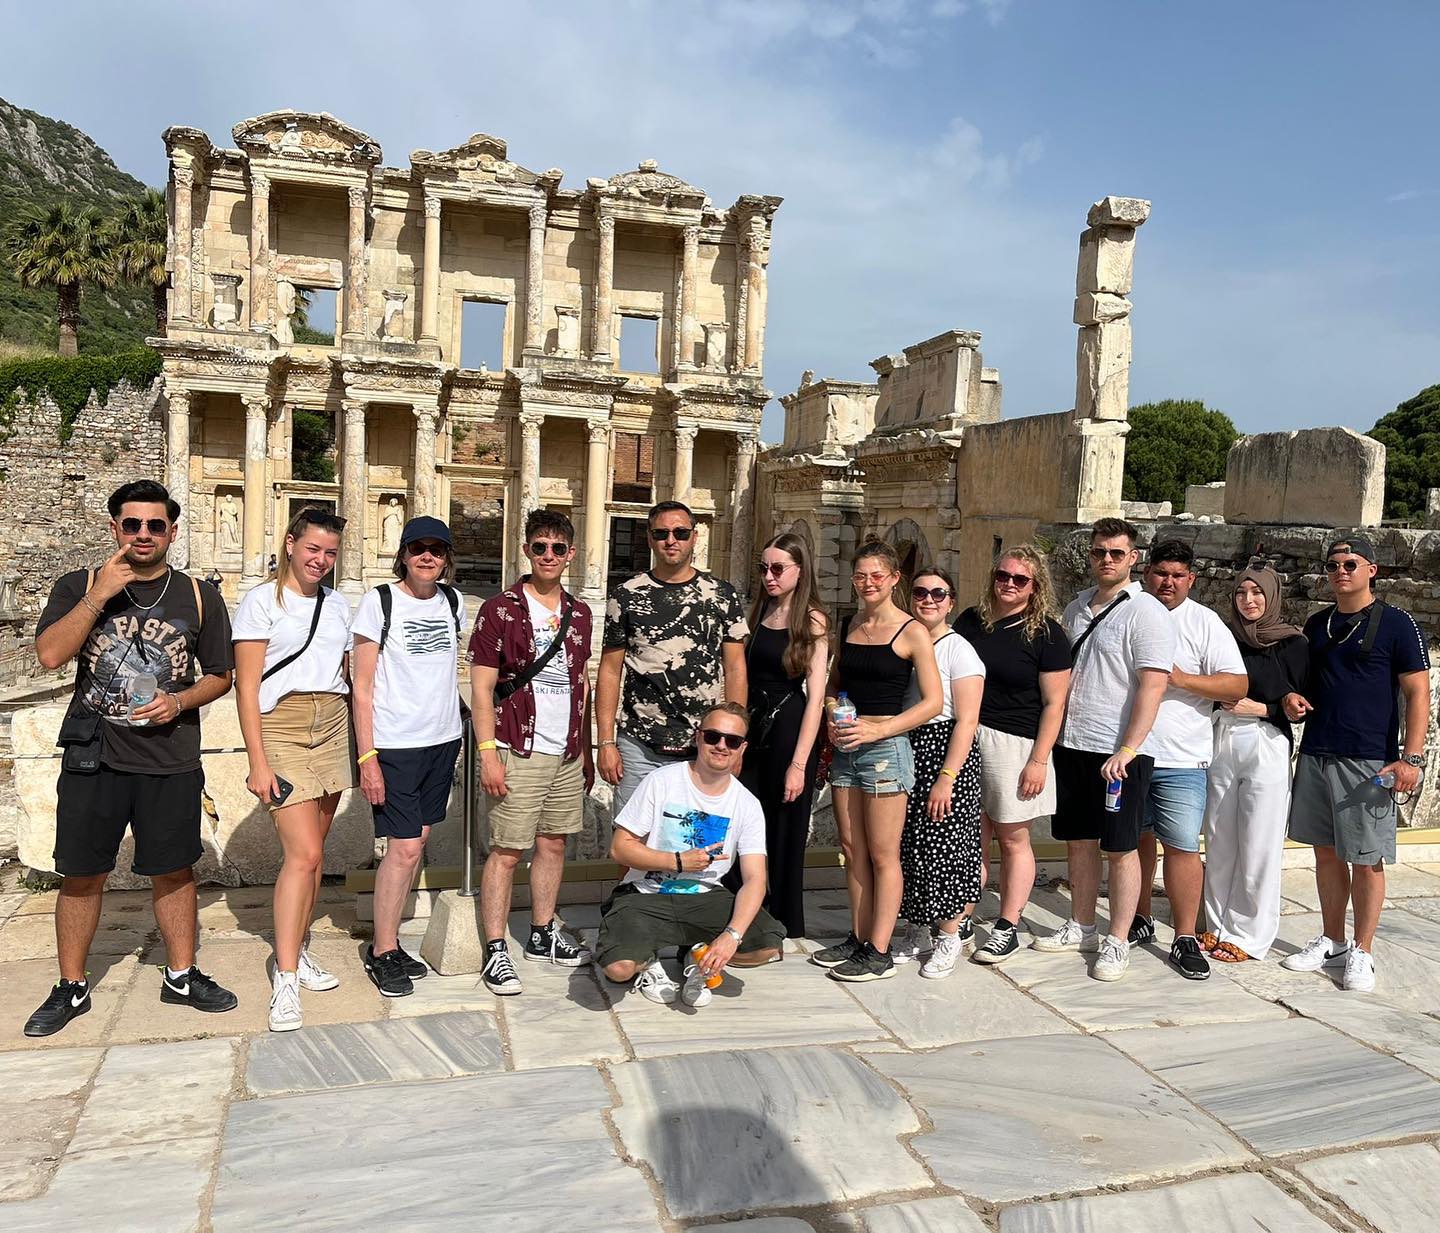 Das Betriebspraktikum in der Türkei wird von einem Kulturprogramm begleitet, z. B. einem Besuch des Weltkulturerbes "Ephesus" mit dem Artimestempel, der zu einem der 7 Weltwunder der antiken Welt zählt. #erasmus #erasmusplus #auslandspraktikum